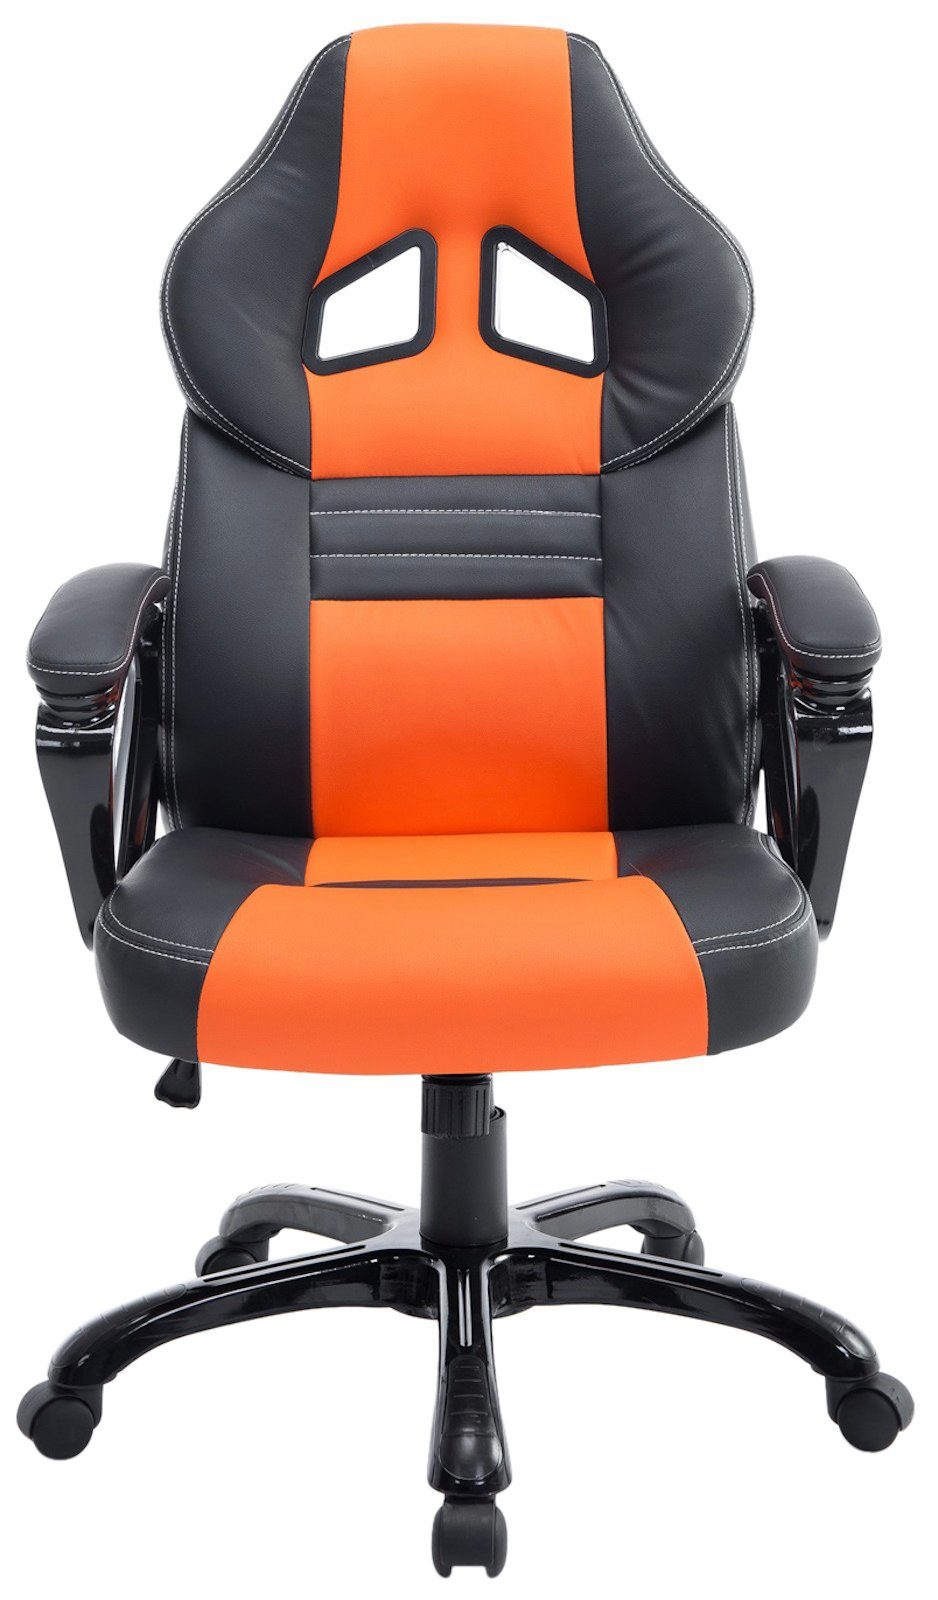 schwarz/orange Gaming Chair drehbar Höhenverstellung Pedro, mit CLP